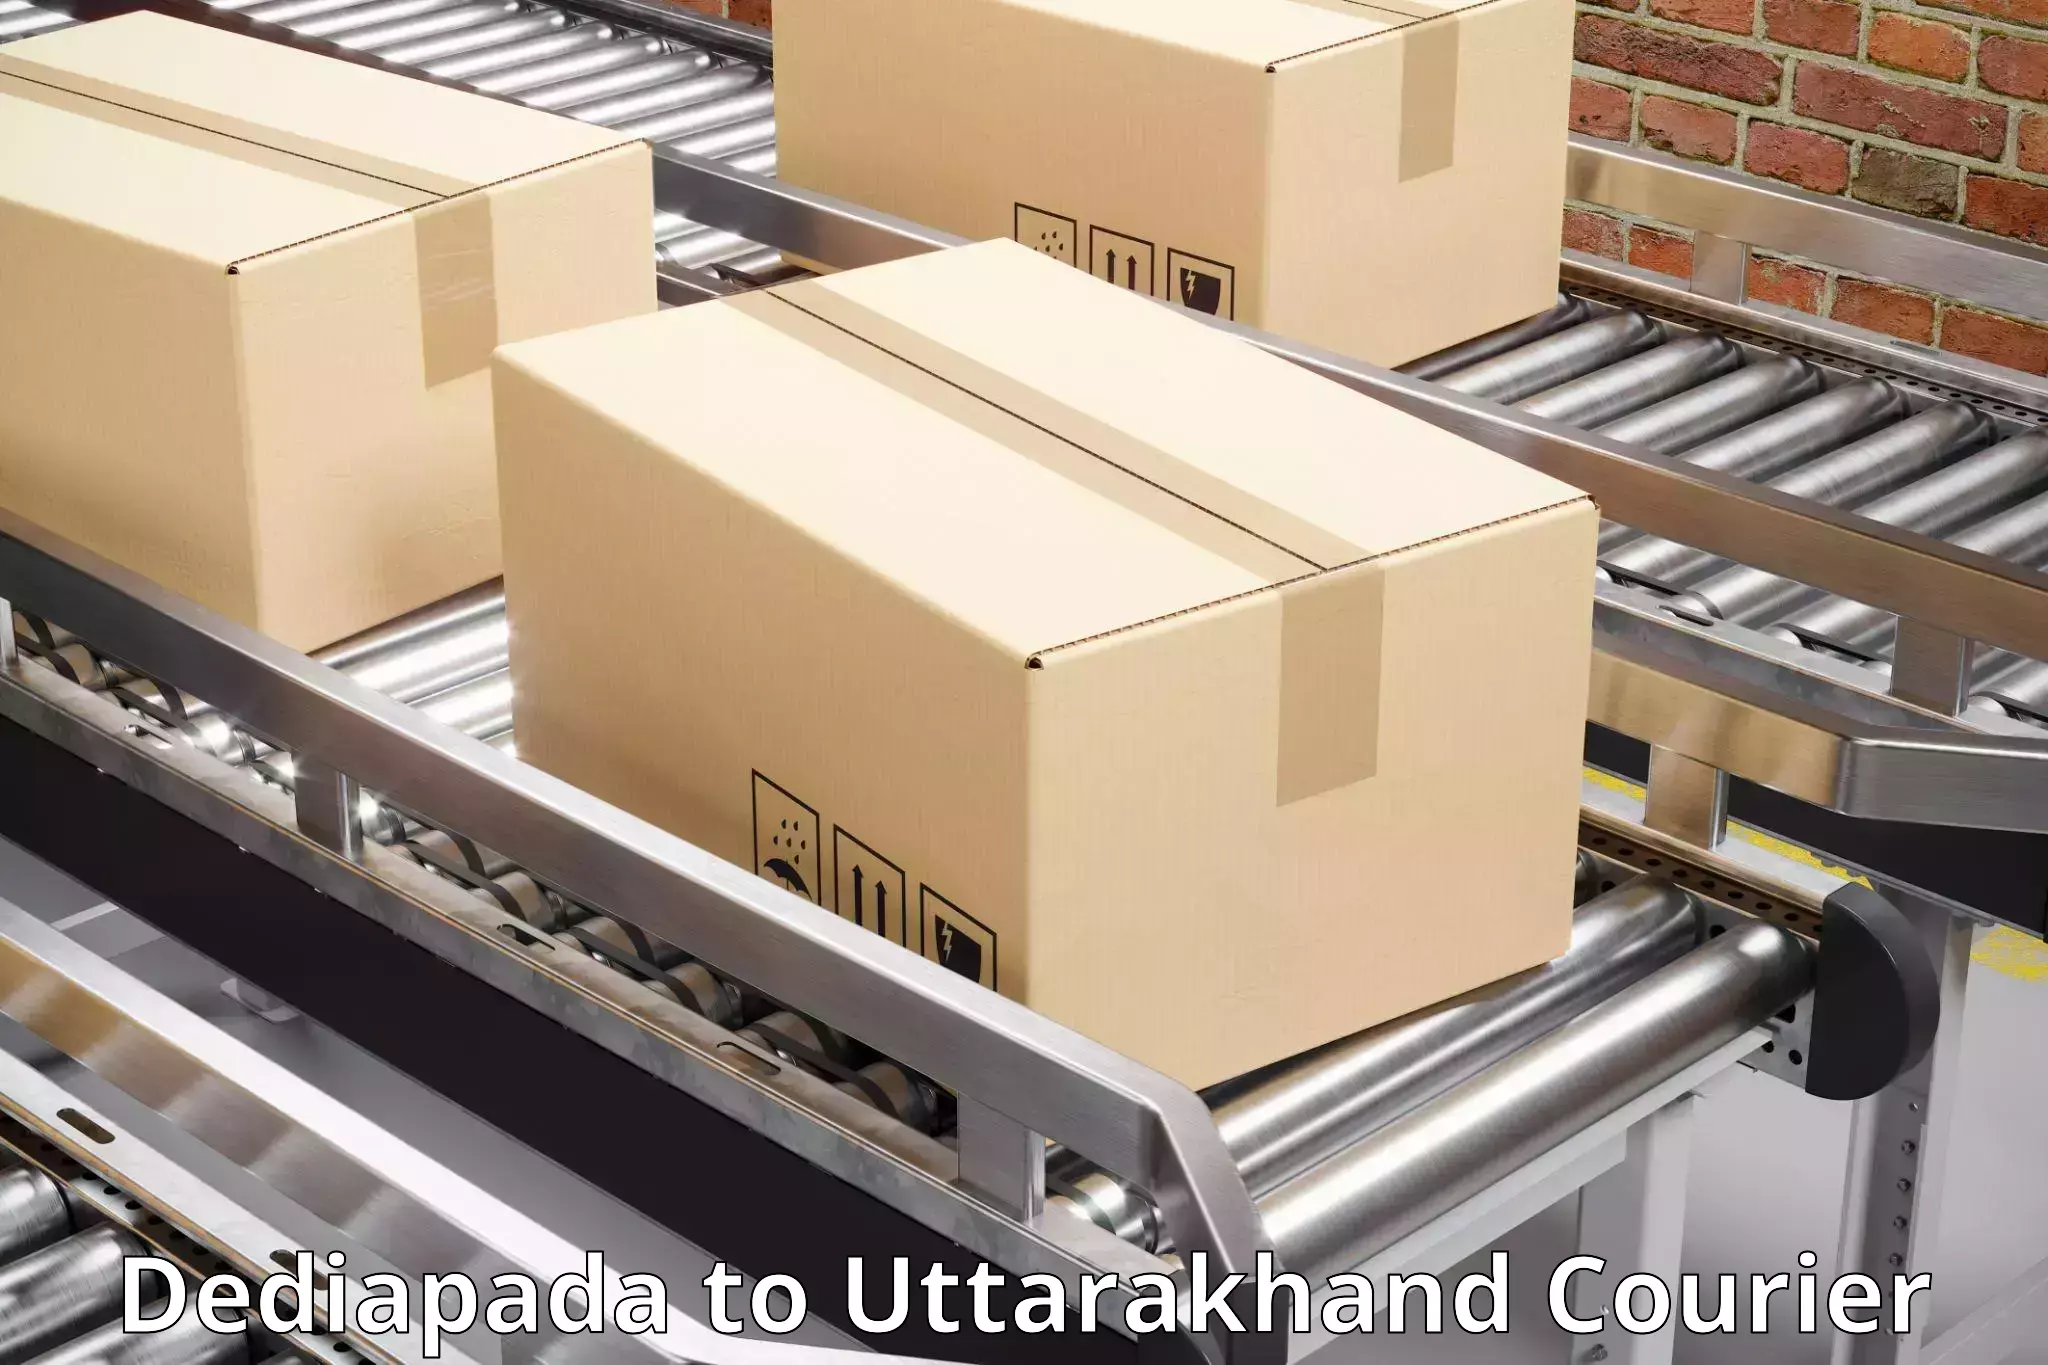 User-friendly delivery service Dediapada to Satpuli